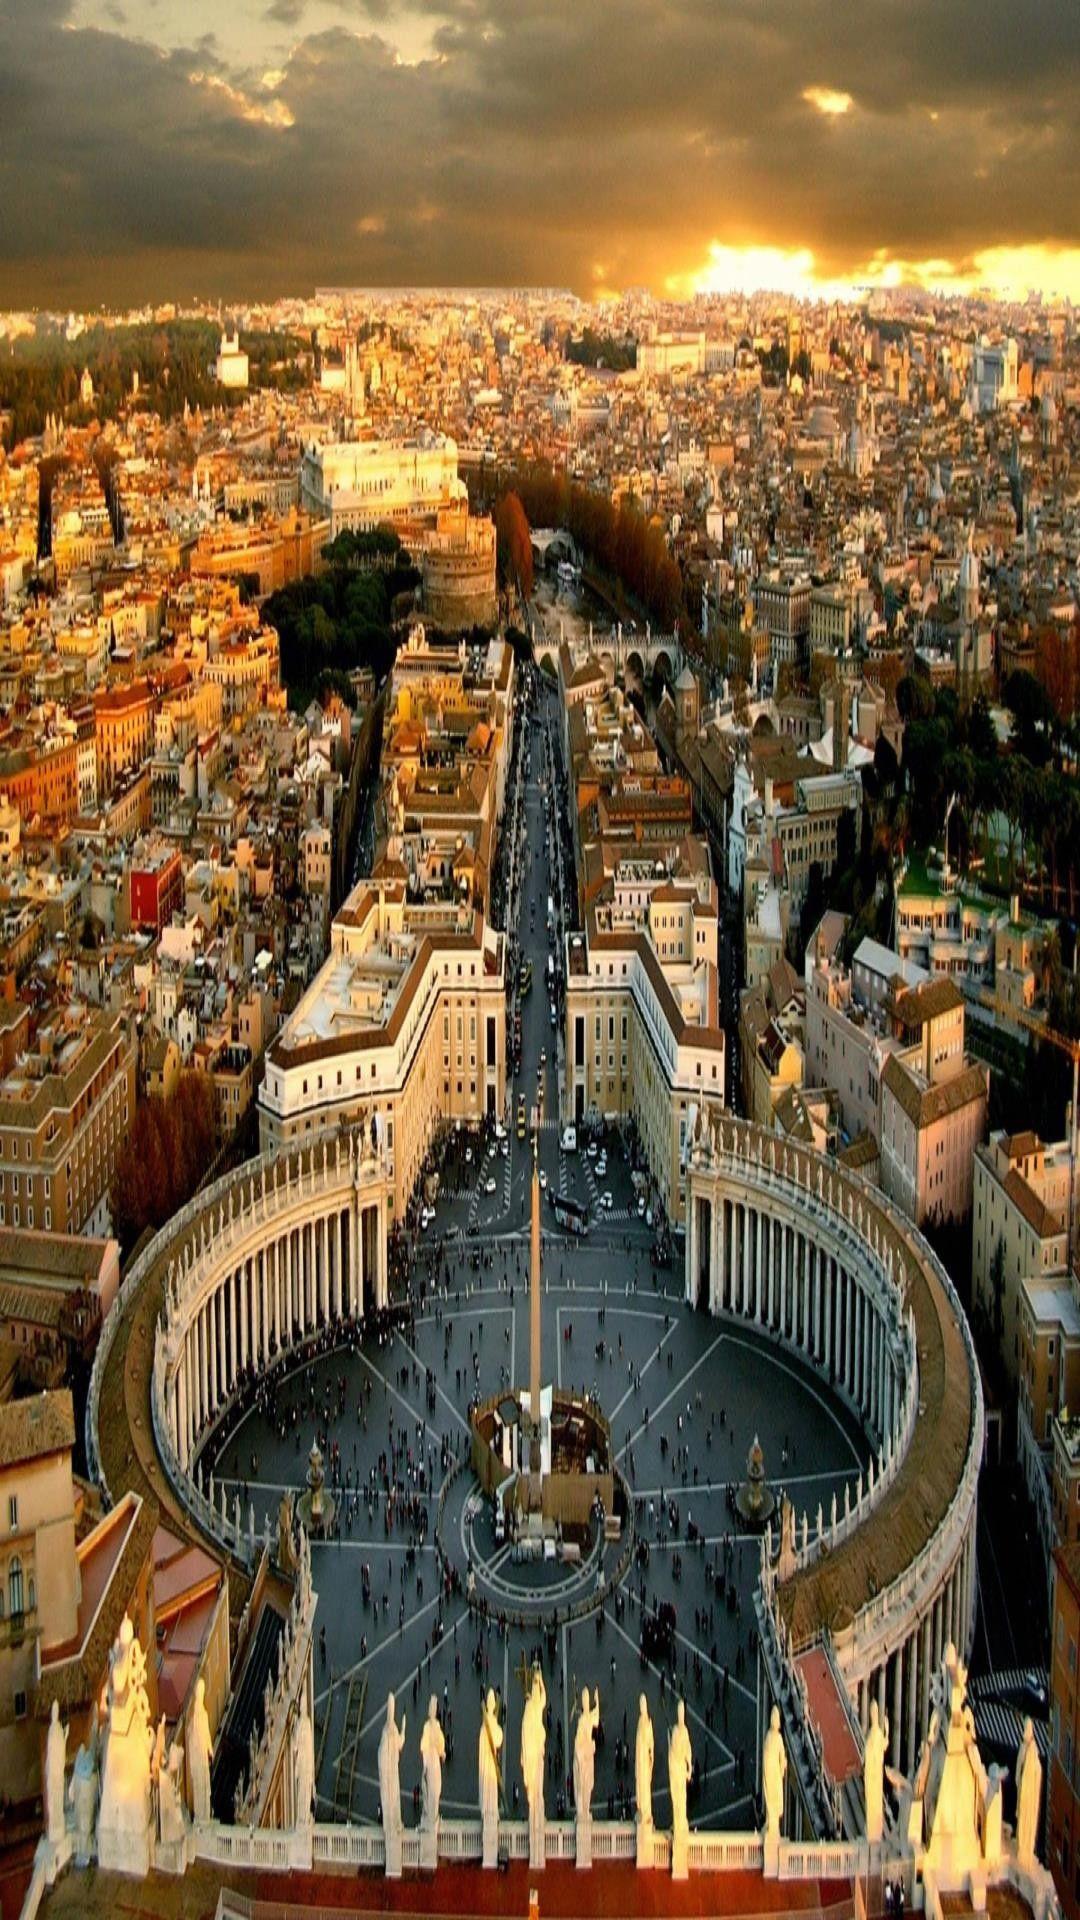 Rôma Hình ảnh Sẵn có  Tải xuống Hình ảnh Ngay bây giờ  Roma Tòa Thánh  Vương Cung Thánh Đường Thánh Phêrô  iStock